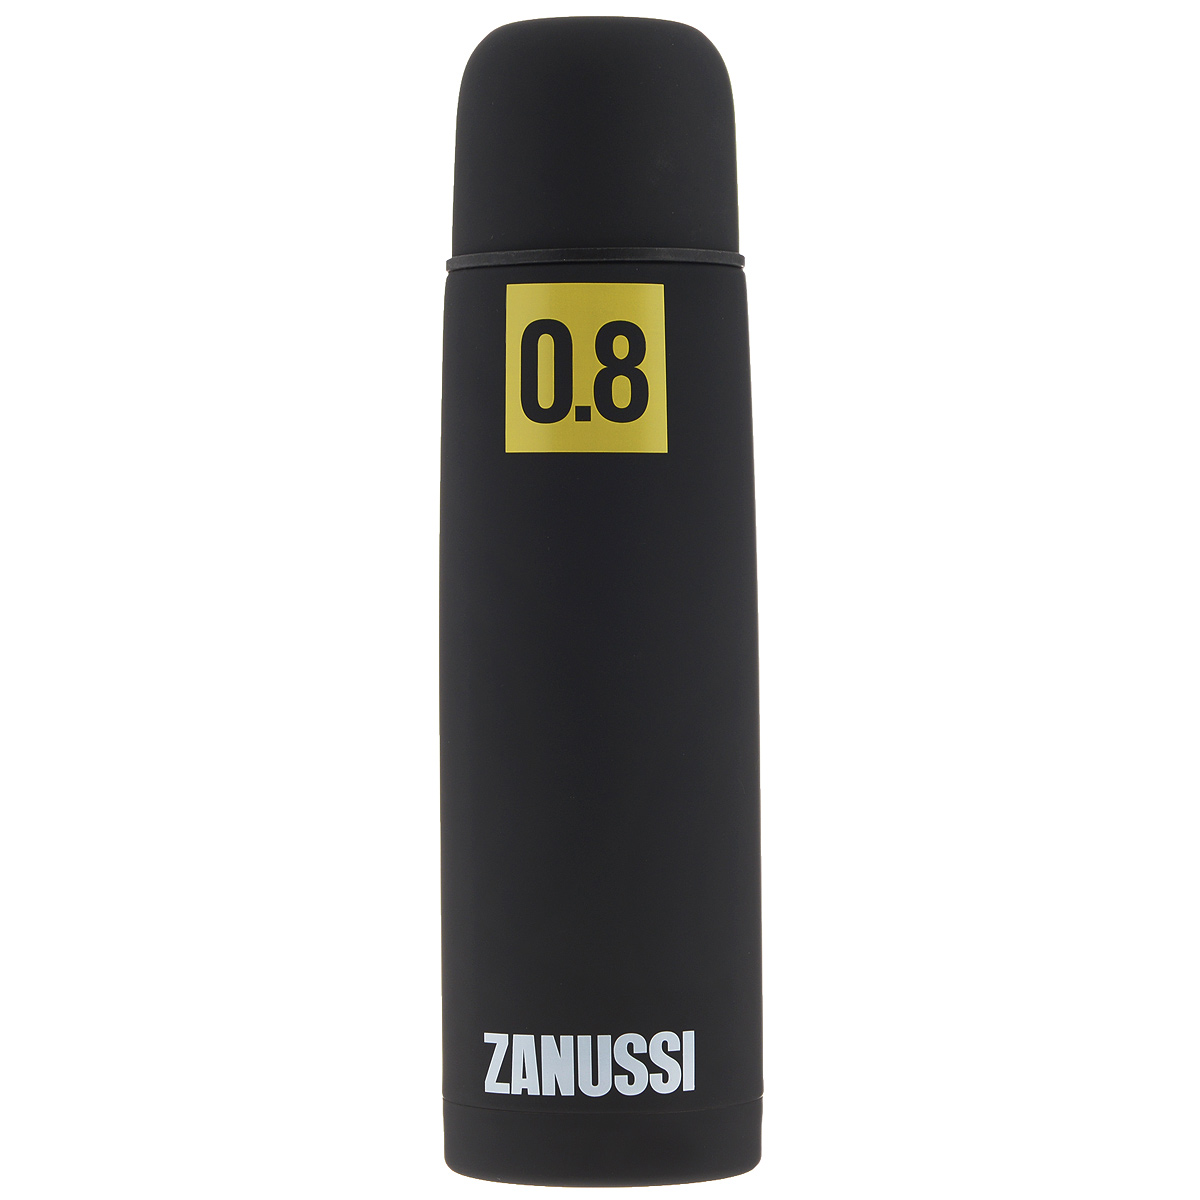 фото Термос "Zanussi", цвет: черный, 800 мл. ZVF41221DF